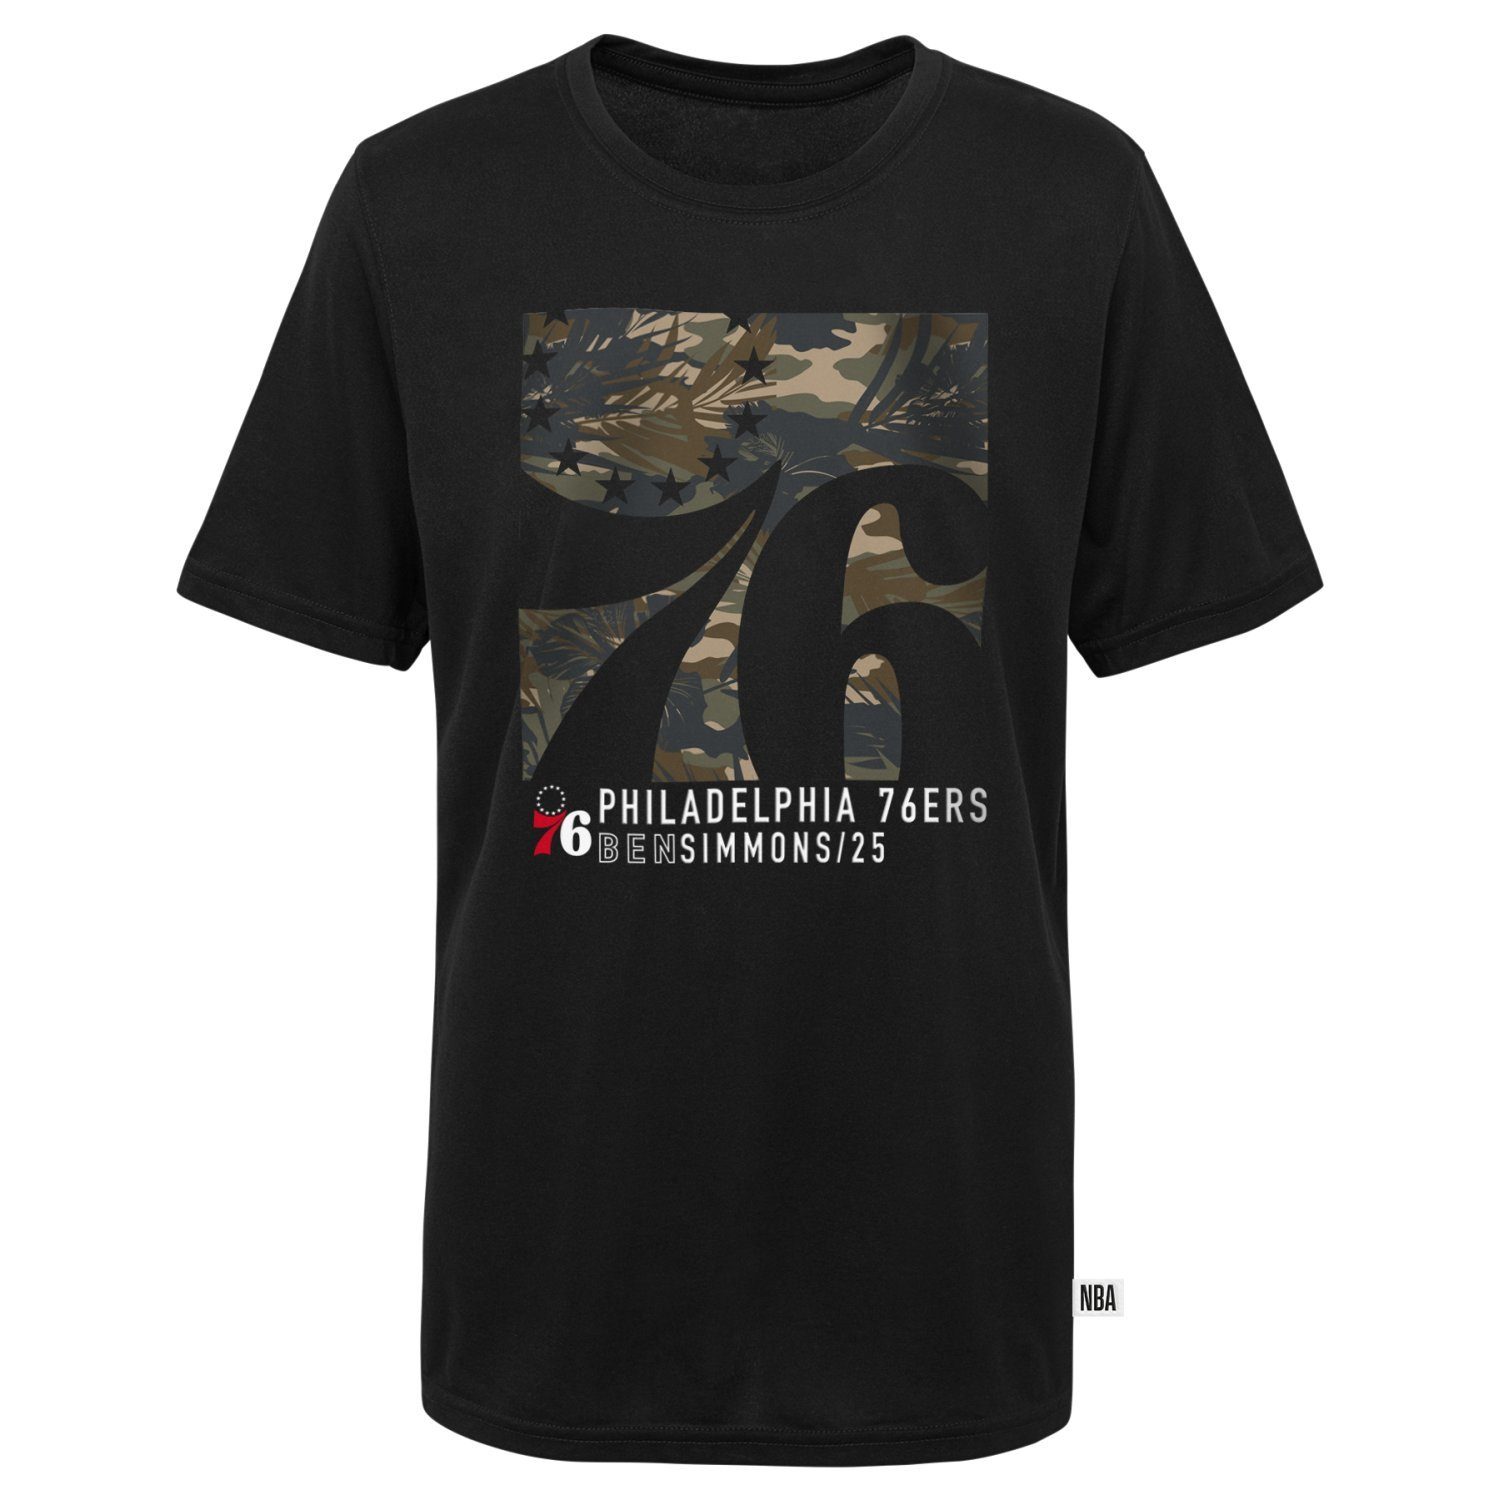 Outerstuff Philadelphia Ben Print-Shirt Outerstuff 76ers NBA Simmons